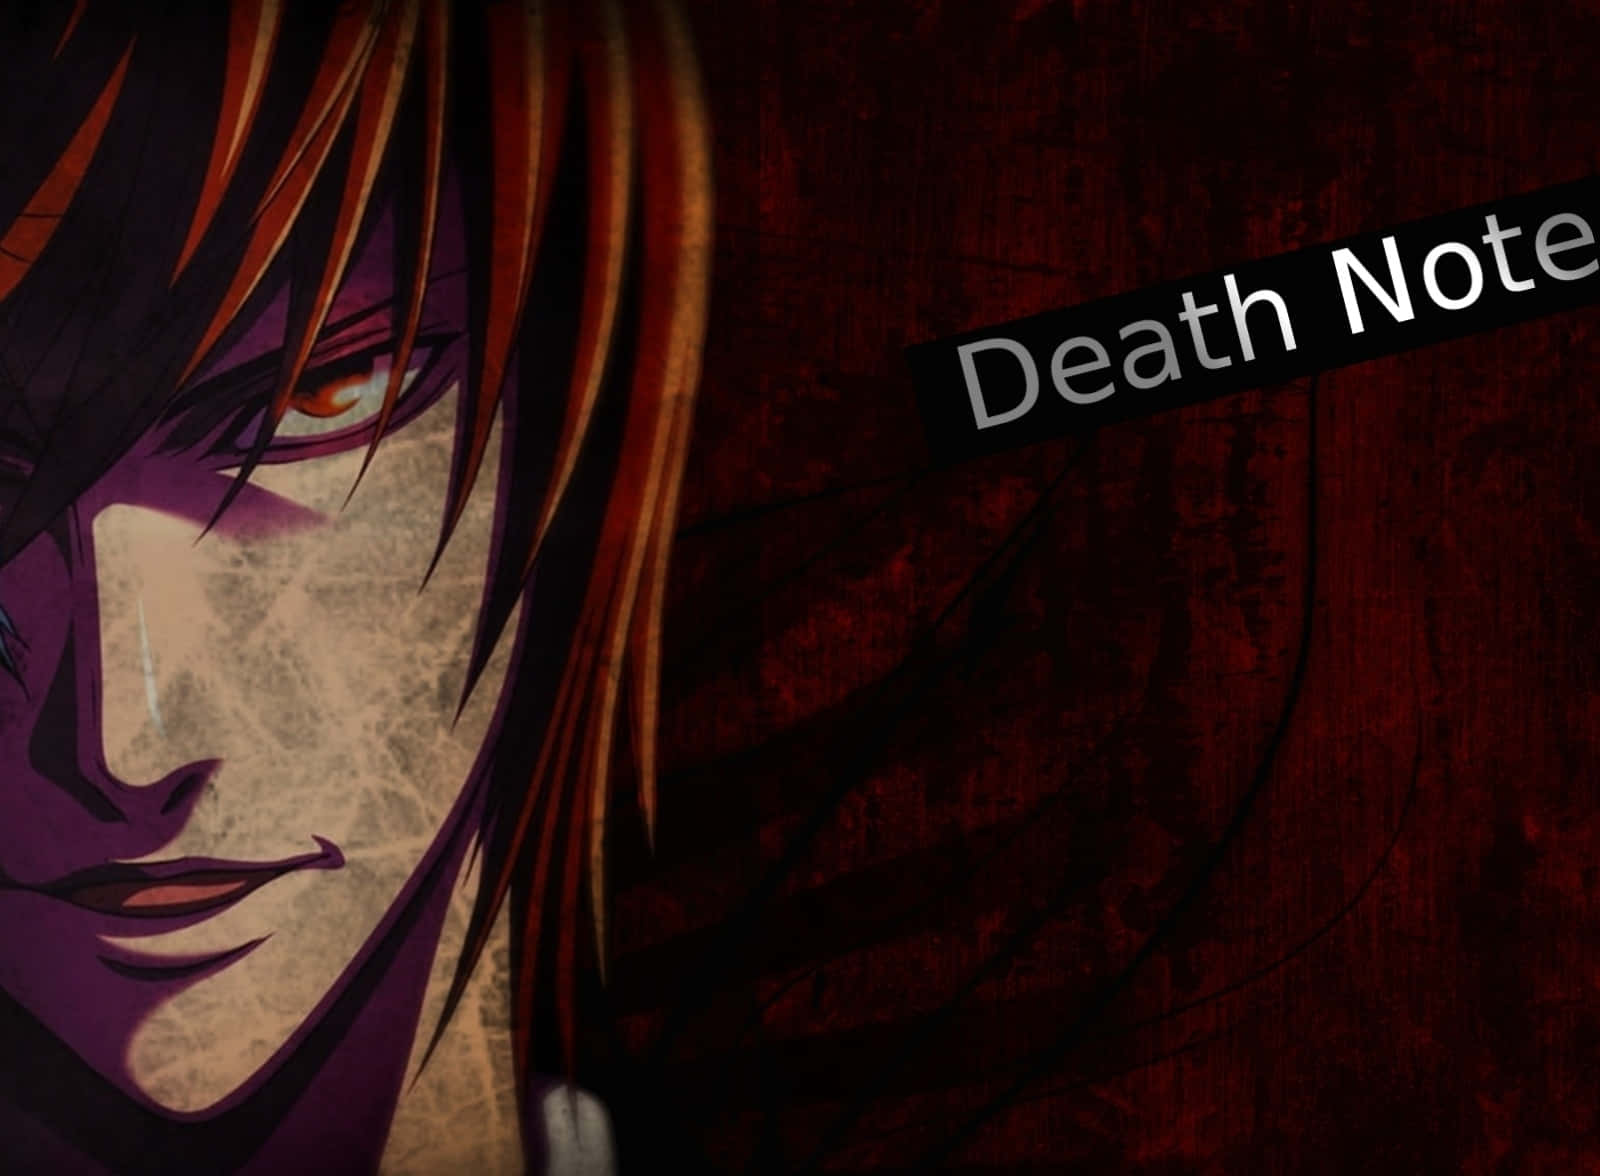 Lightyagami Træder Ind I Death Note-verdenen.